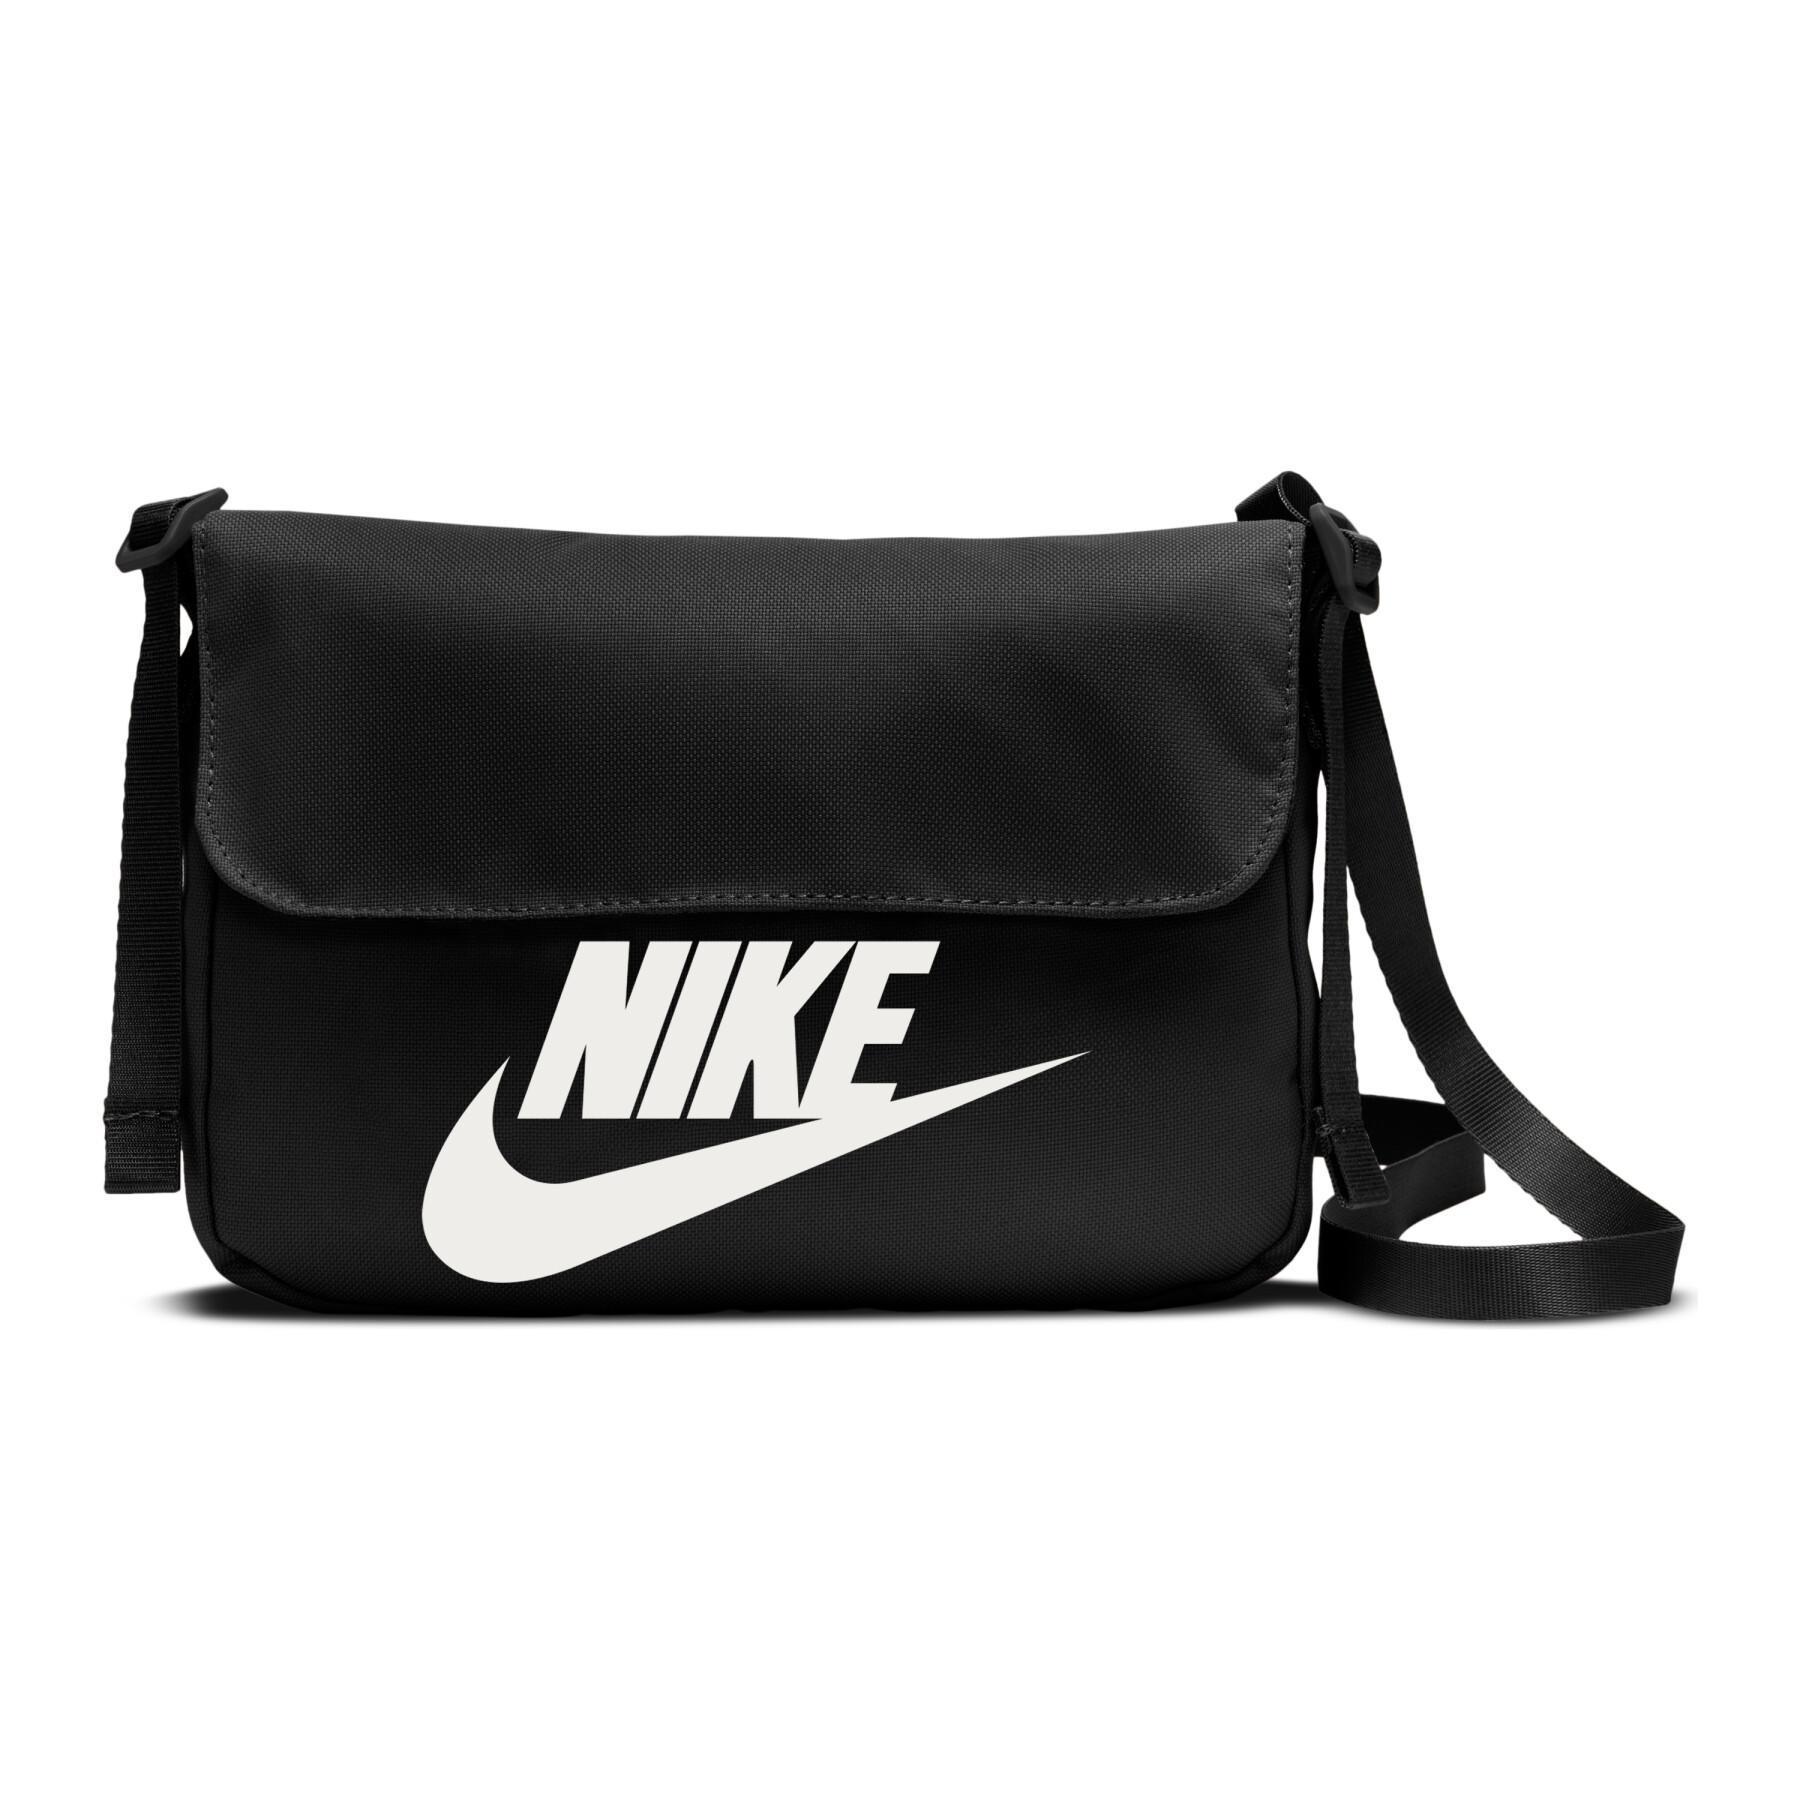 Women's shoulder bag Nike sportswear